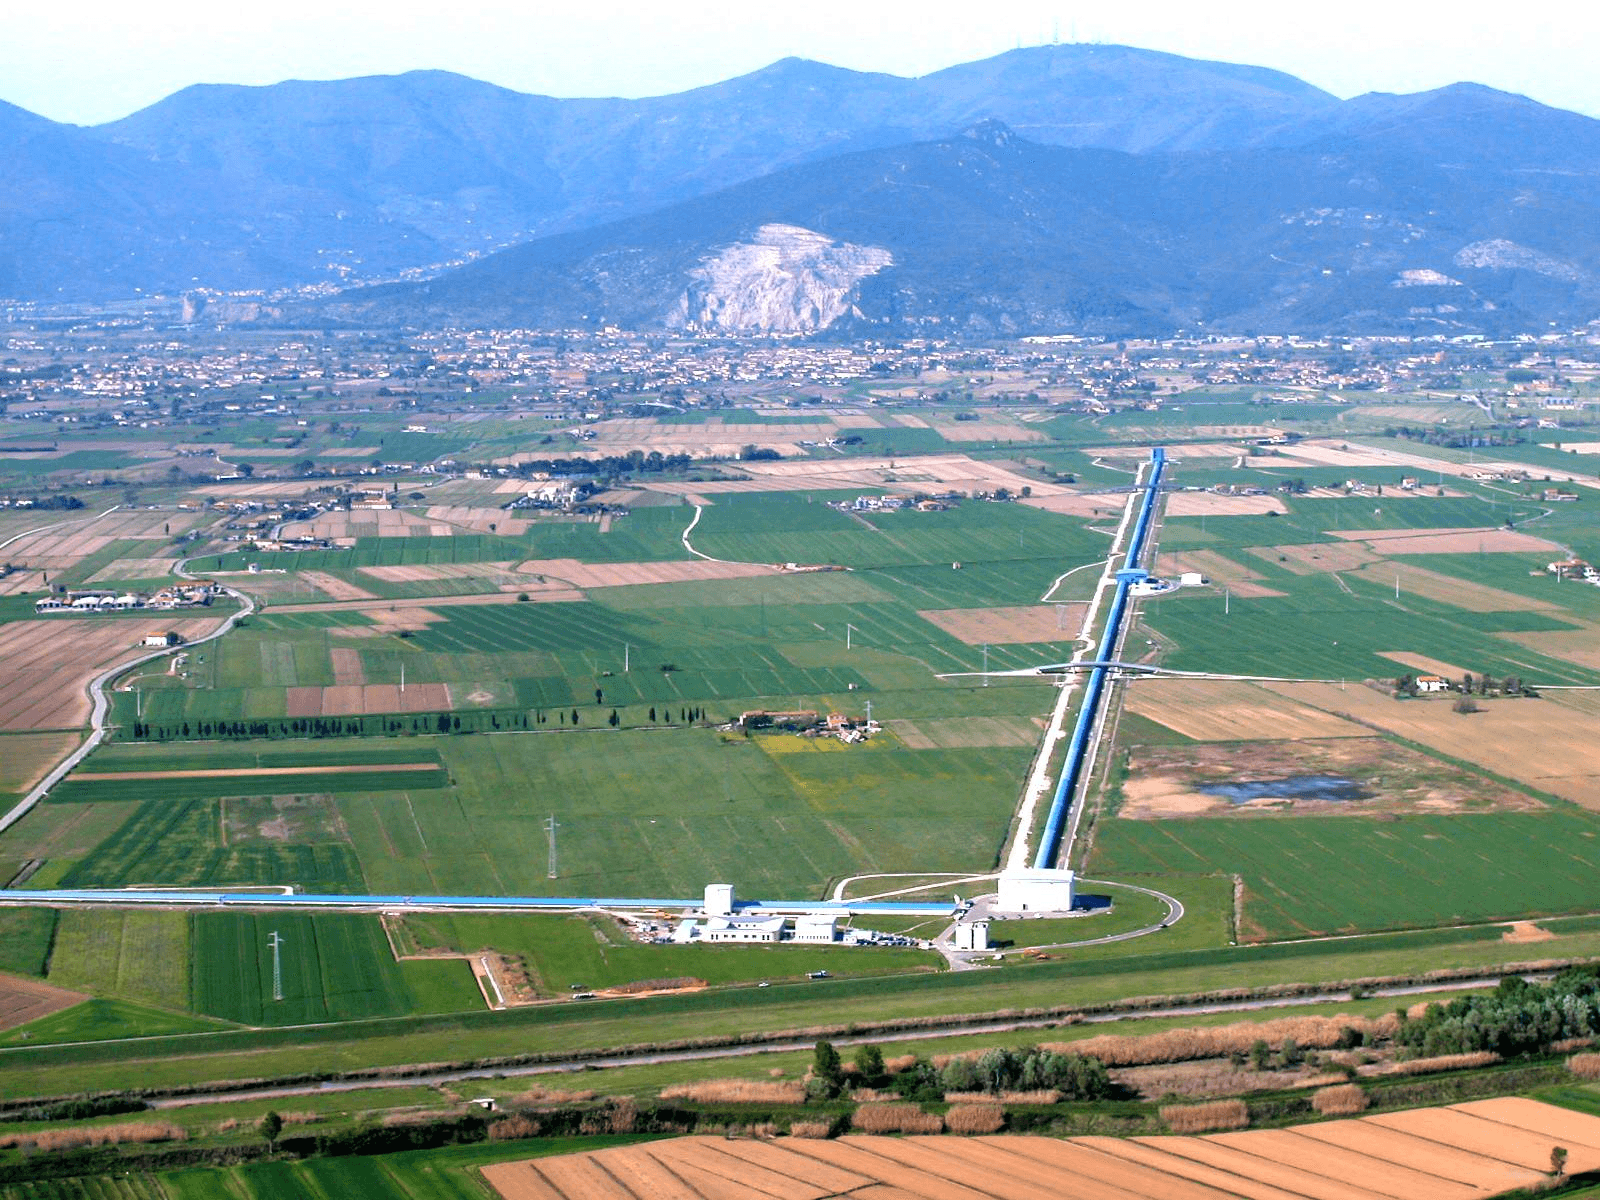 Aerial view of Virgo, looking north